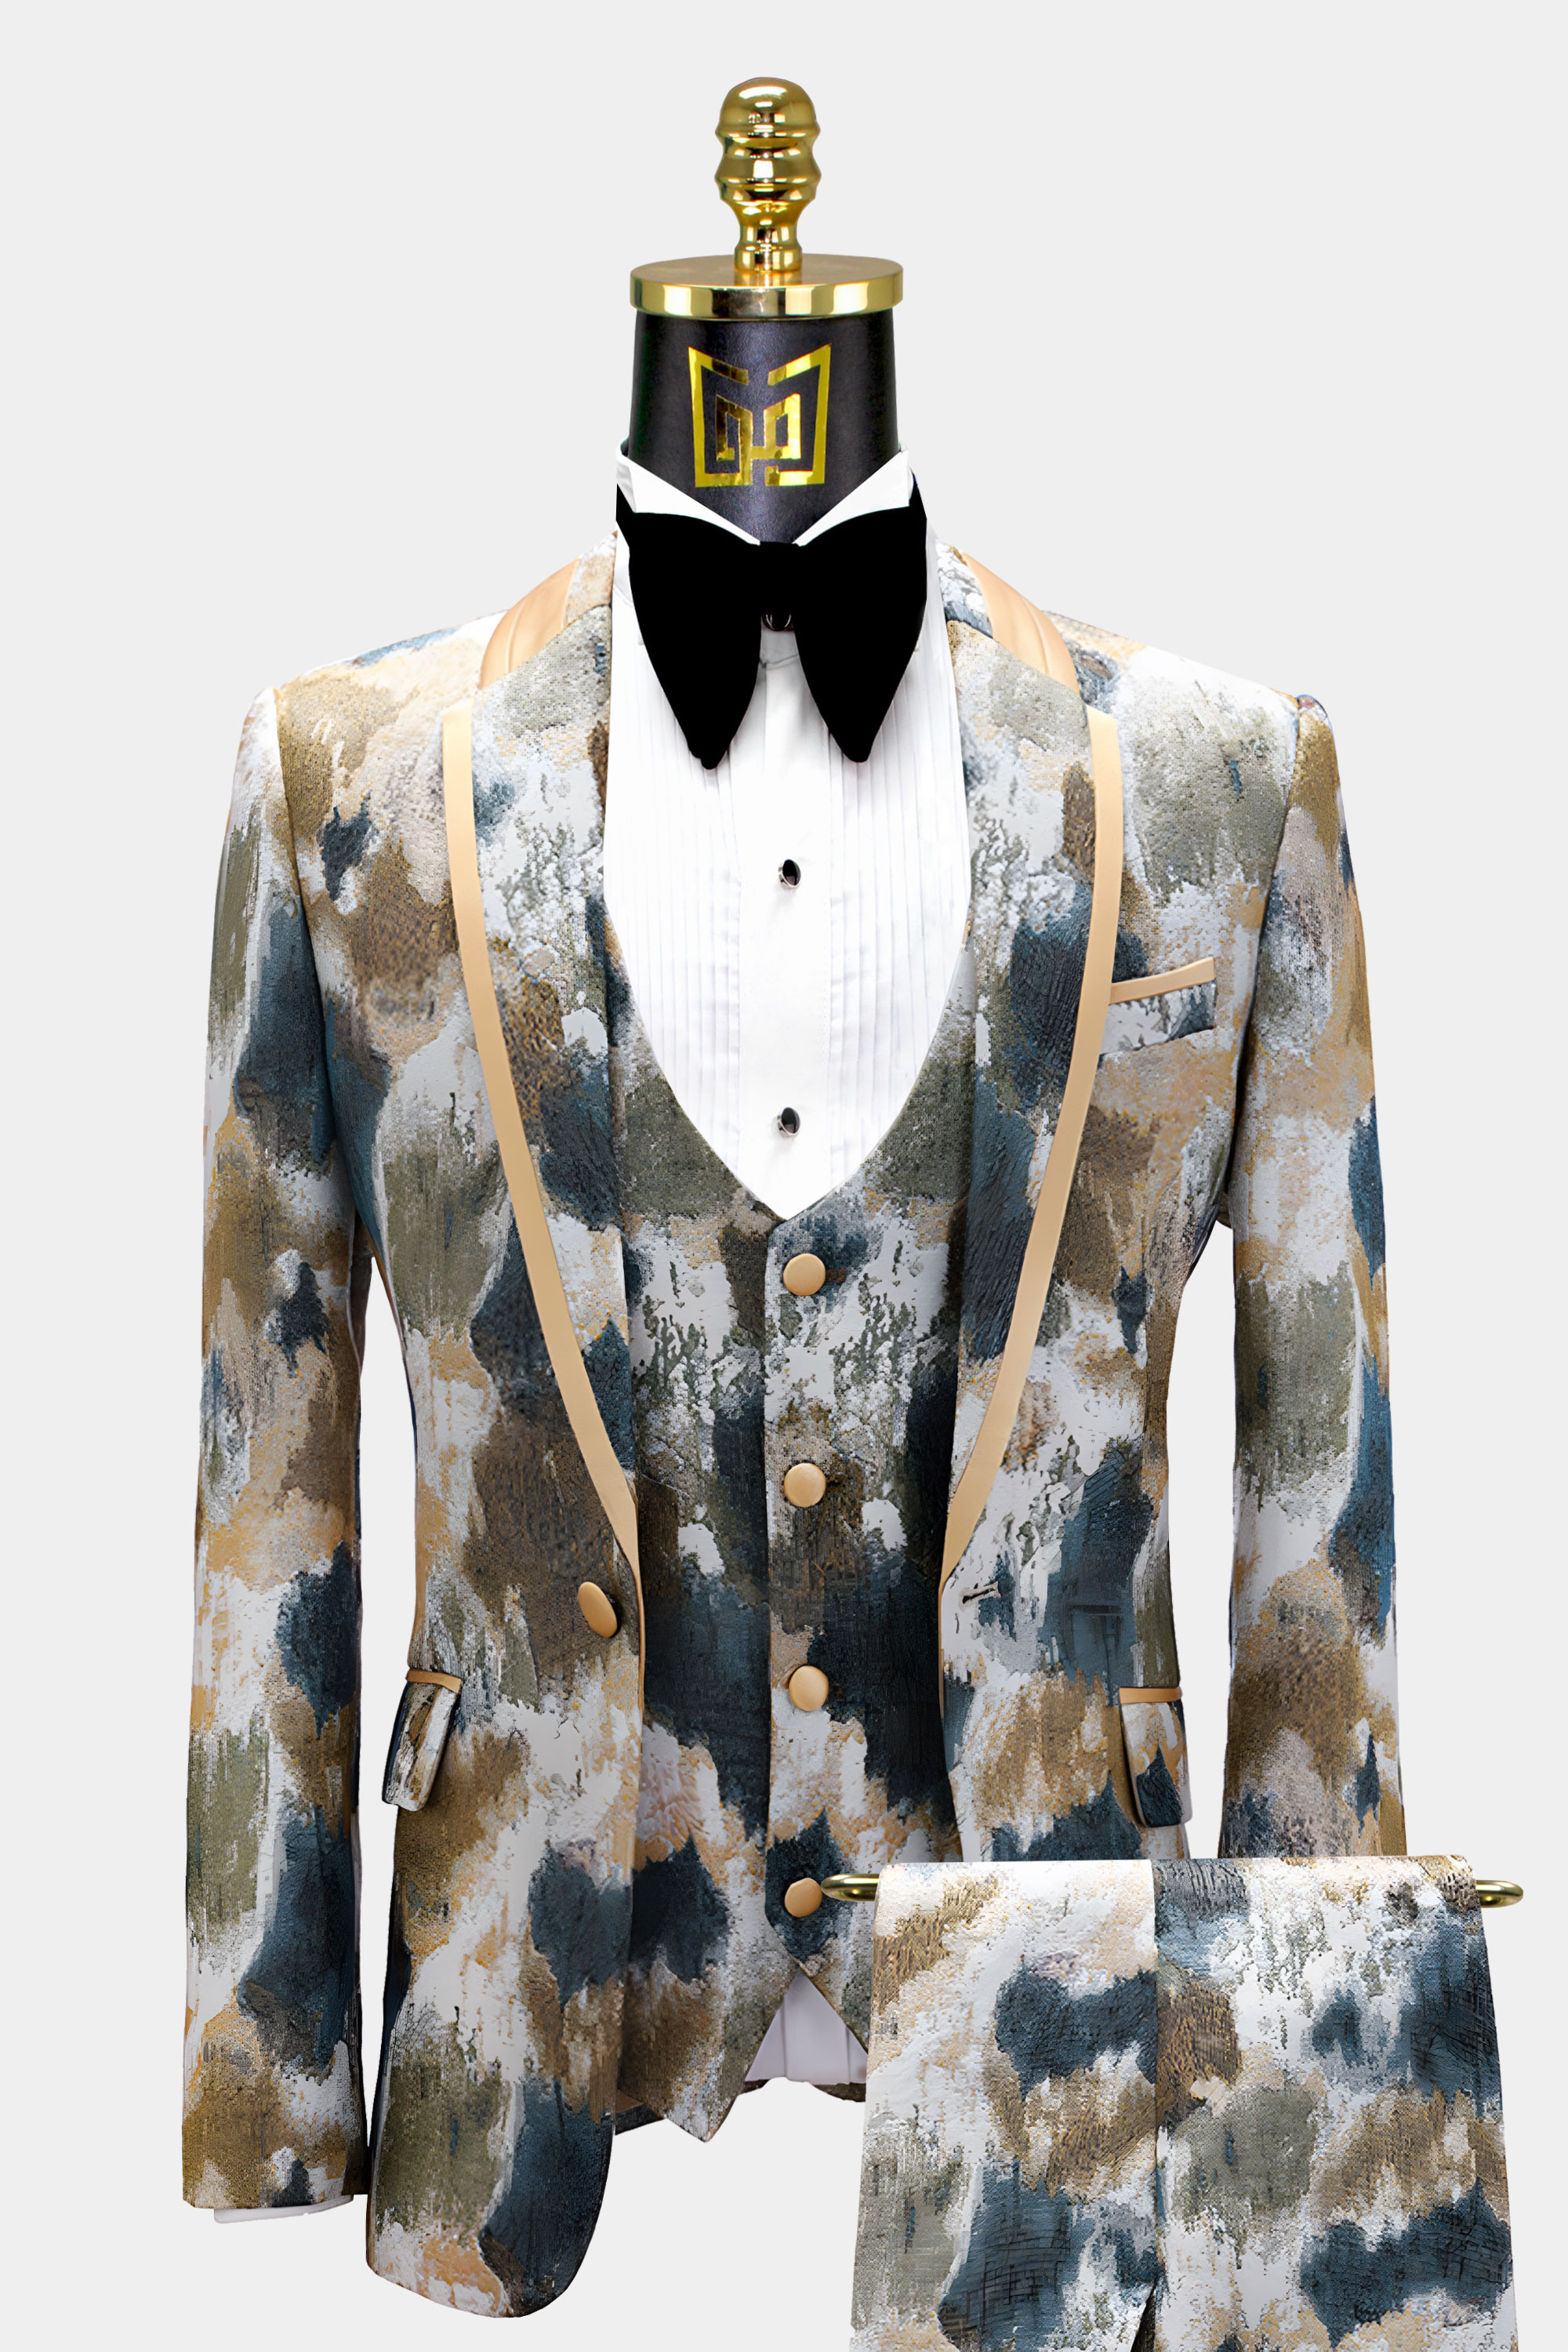 Mens-Abstract-Golde-Tuxedo-Groom-Wedding-Prom-Suit-from-Gentlemansguru.com